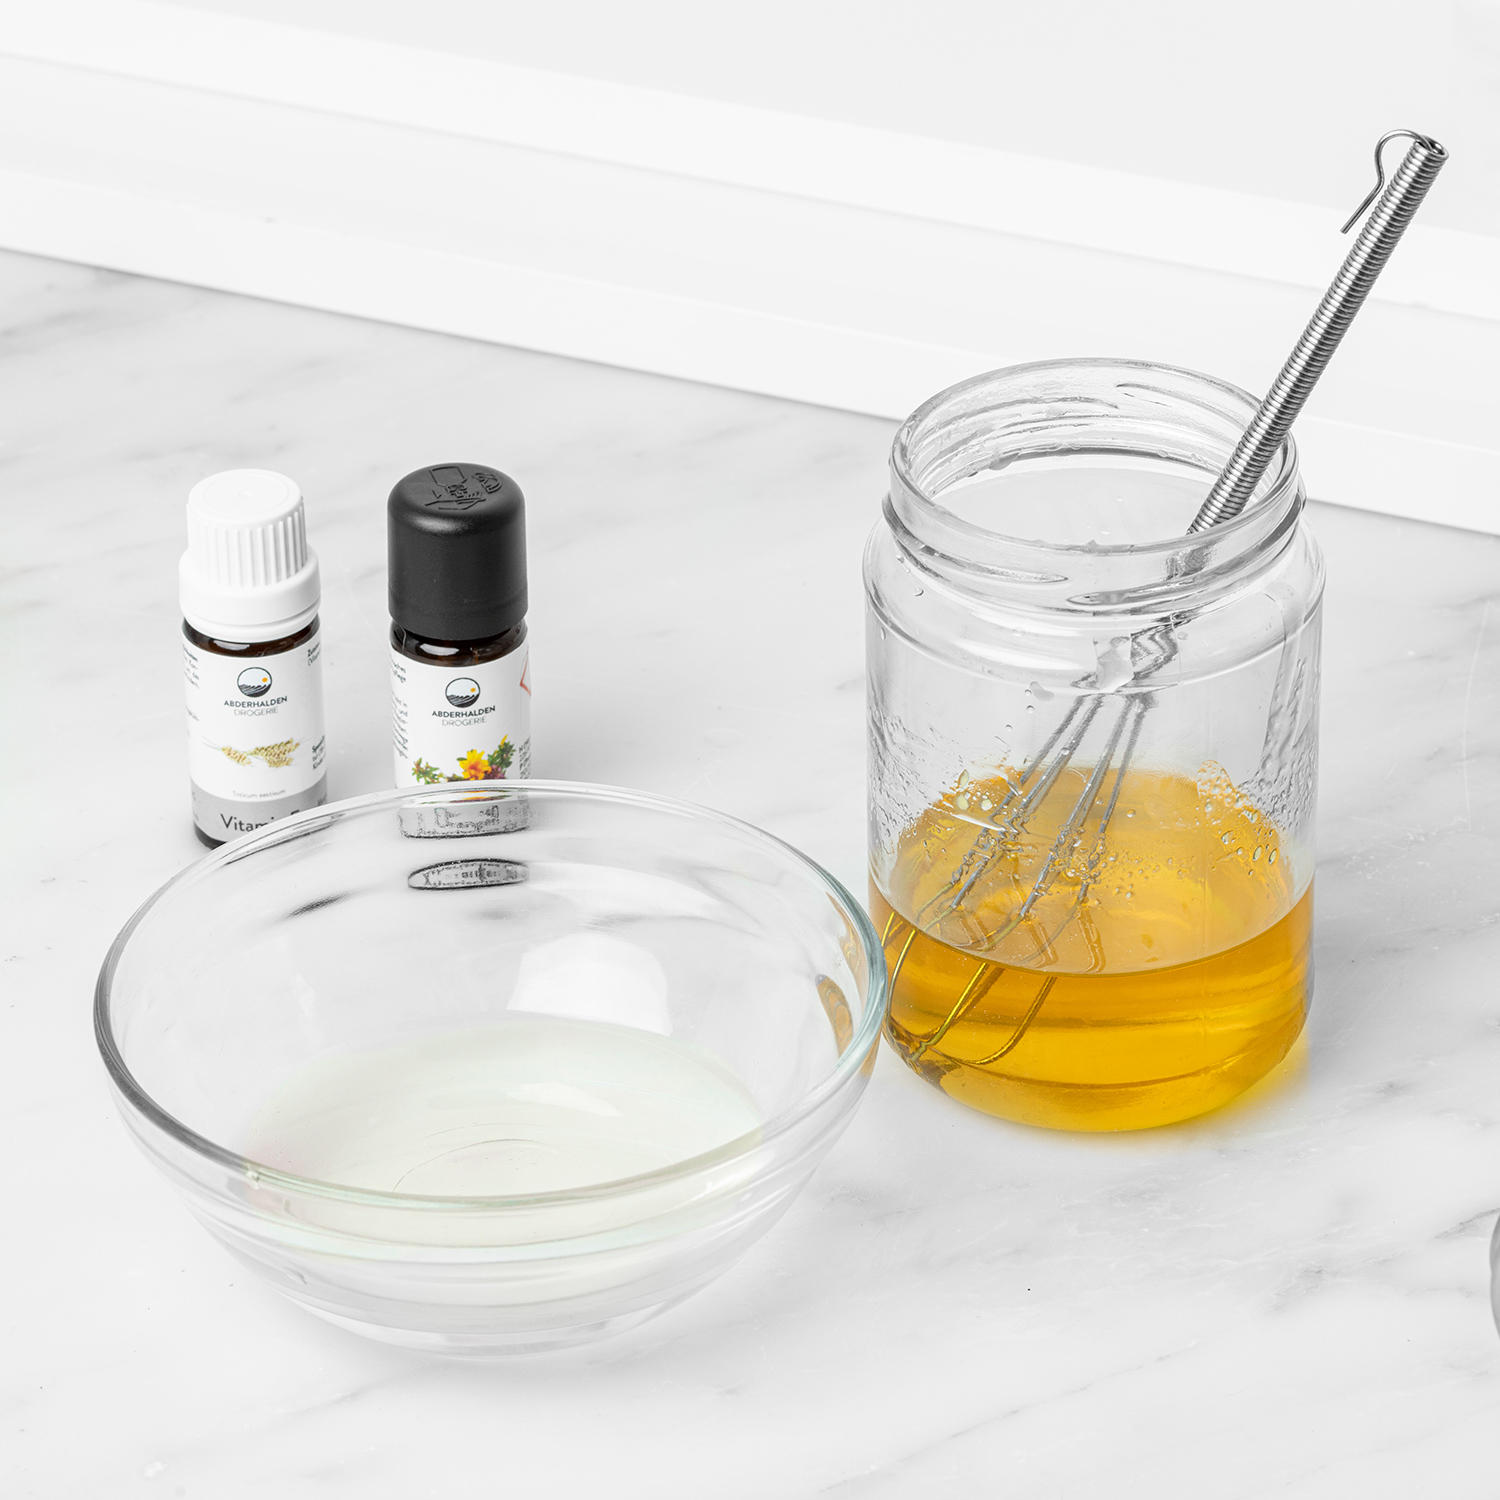 Orangeblütenwasser in Schale neben geschmolzener Fettphase, Vitamin E und Ätherisches Öl dahinter